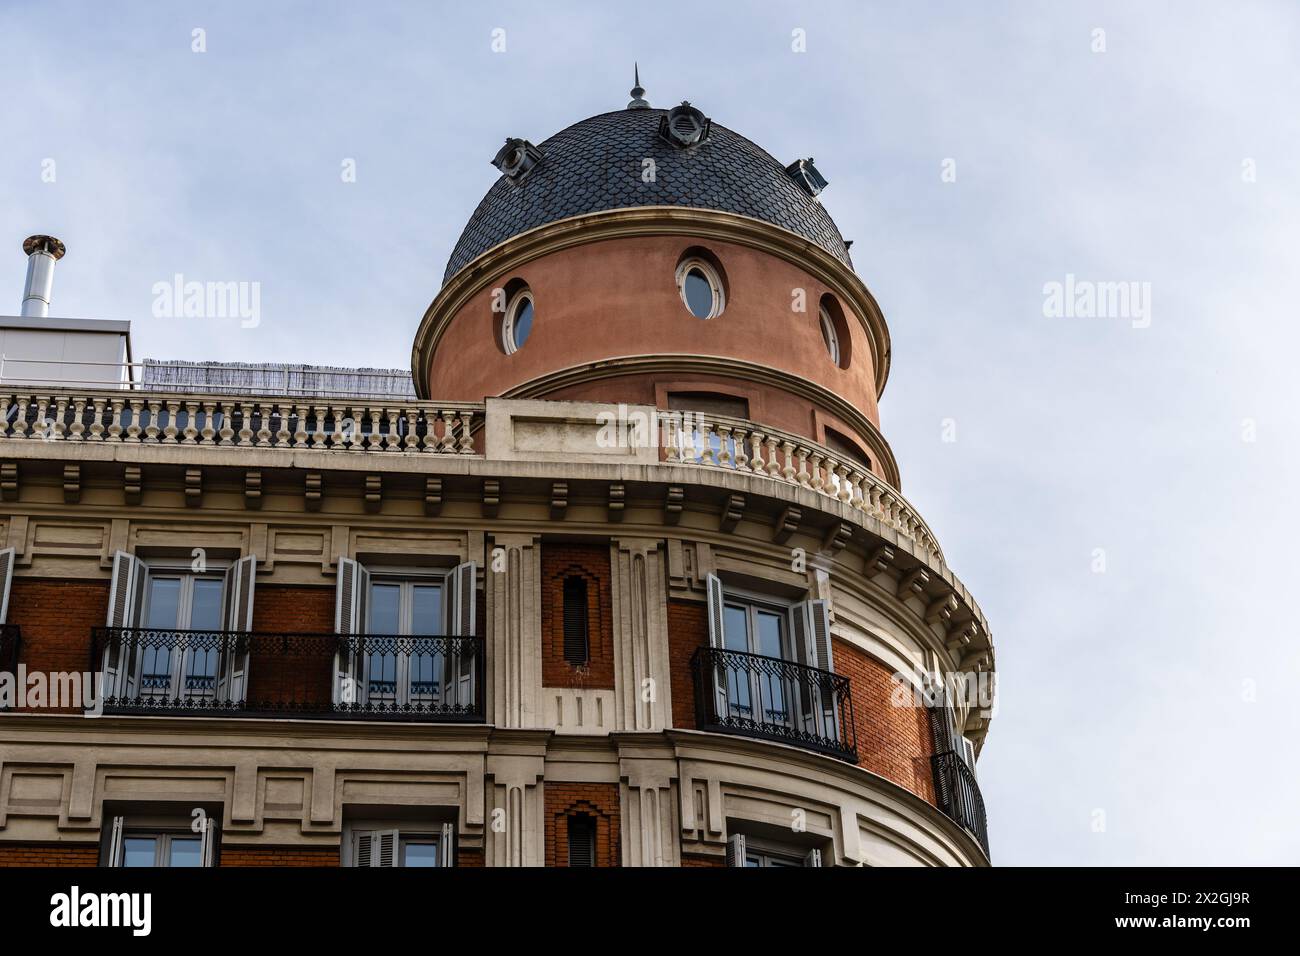 Alte Luxuswohnhäuser im Jeronimos-Viertel im Zentrum von Madrid. Stockfoto